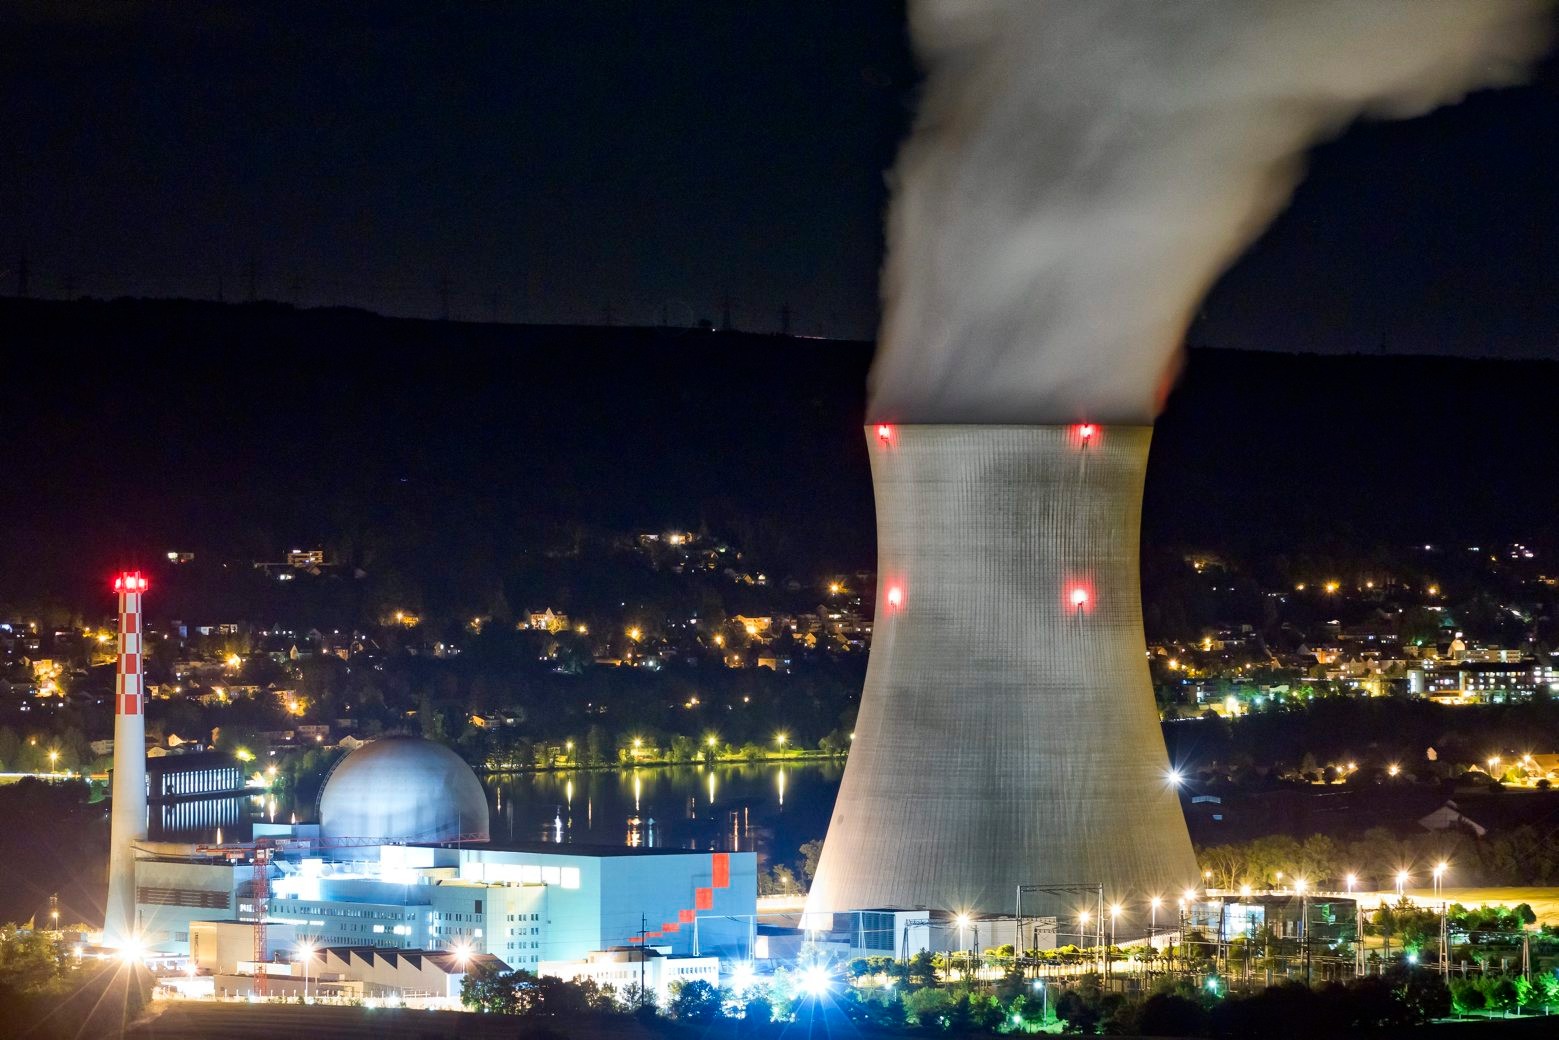 ZUM WAHLKAMPF DER EIDGENOESSISCHEN WAHLEN VOM 18. OKTOBER 2015 STELLEN WIR IHNEN ZUM SCHWERPUNKTTHEMA "ENERGIE" FOLGENDES BILDMATERIAL ZUR VERFUEGUNG - WEITERE BILDER FINDEN SIE AUF UNSERER WEBSEITE "PARLAMENTSWAHLEN 2015" - The nuclear power plant Leibstadt in the canton of Aargau, Switzerland, pictured on May 28, 2011. (KEYSTONE/Alessandro Della Bella)



Das Atomkraftwerk Leibstadt, aufgenommen am Samstag, 28. Mai 2011. (KEYSTONE/Alessandro Della Bella) SCHWEIZ WAHLEN 2015 THEMA ENERGIE